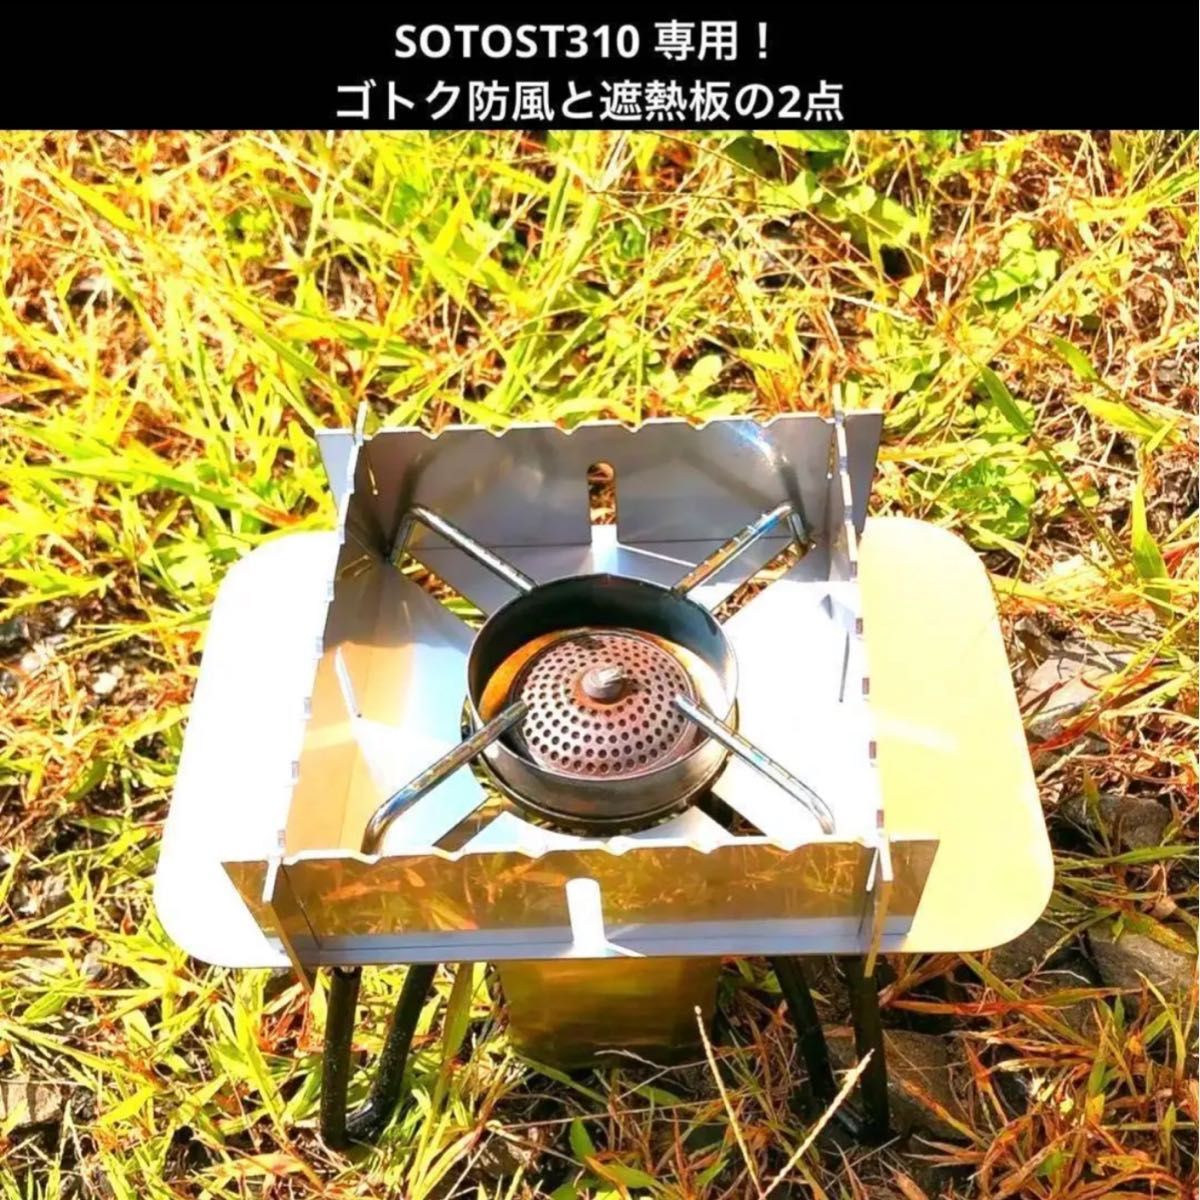 SOTO ST310 ゴトク 防風 遮熱板 メスティン収納可能 コンパクト アウトドア セットシングルバーナー ソロキャンプ 